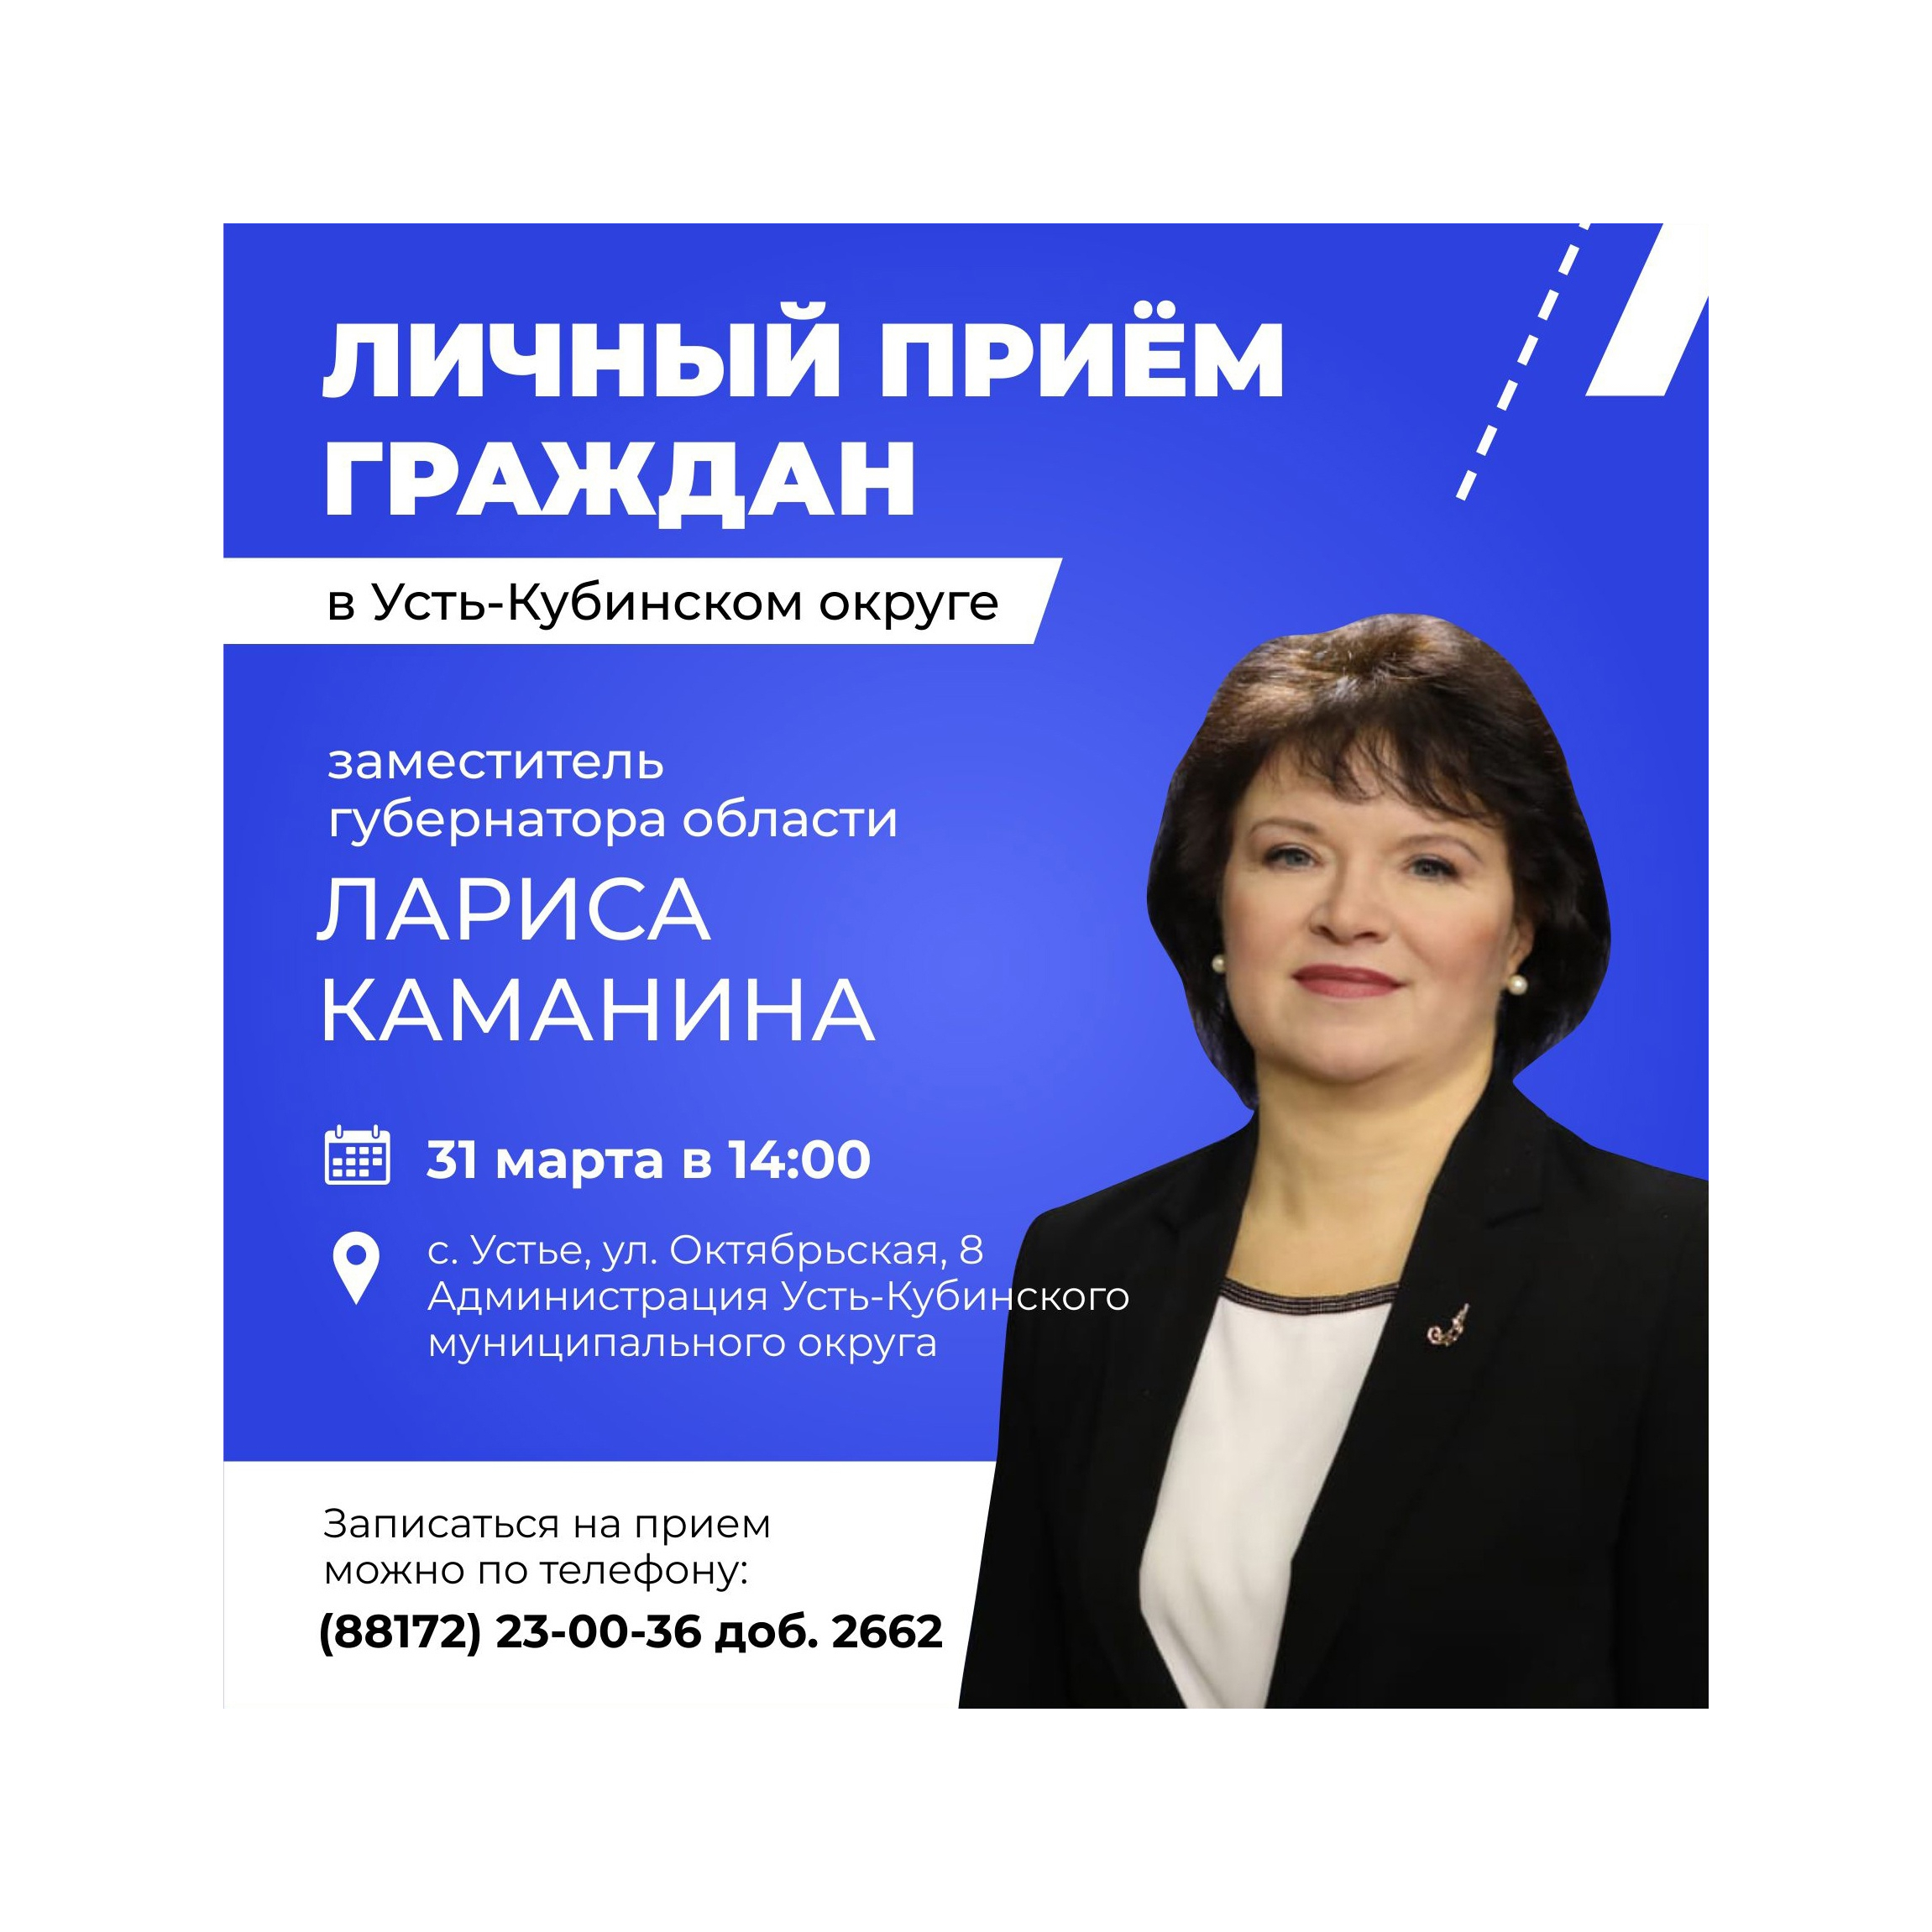 Личный прием проведет заместитель Губернатора Вологодской области Лариса Владимировна Каманина.